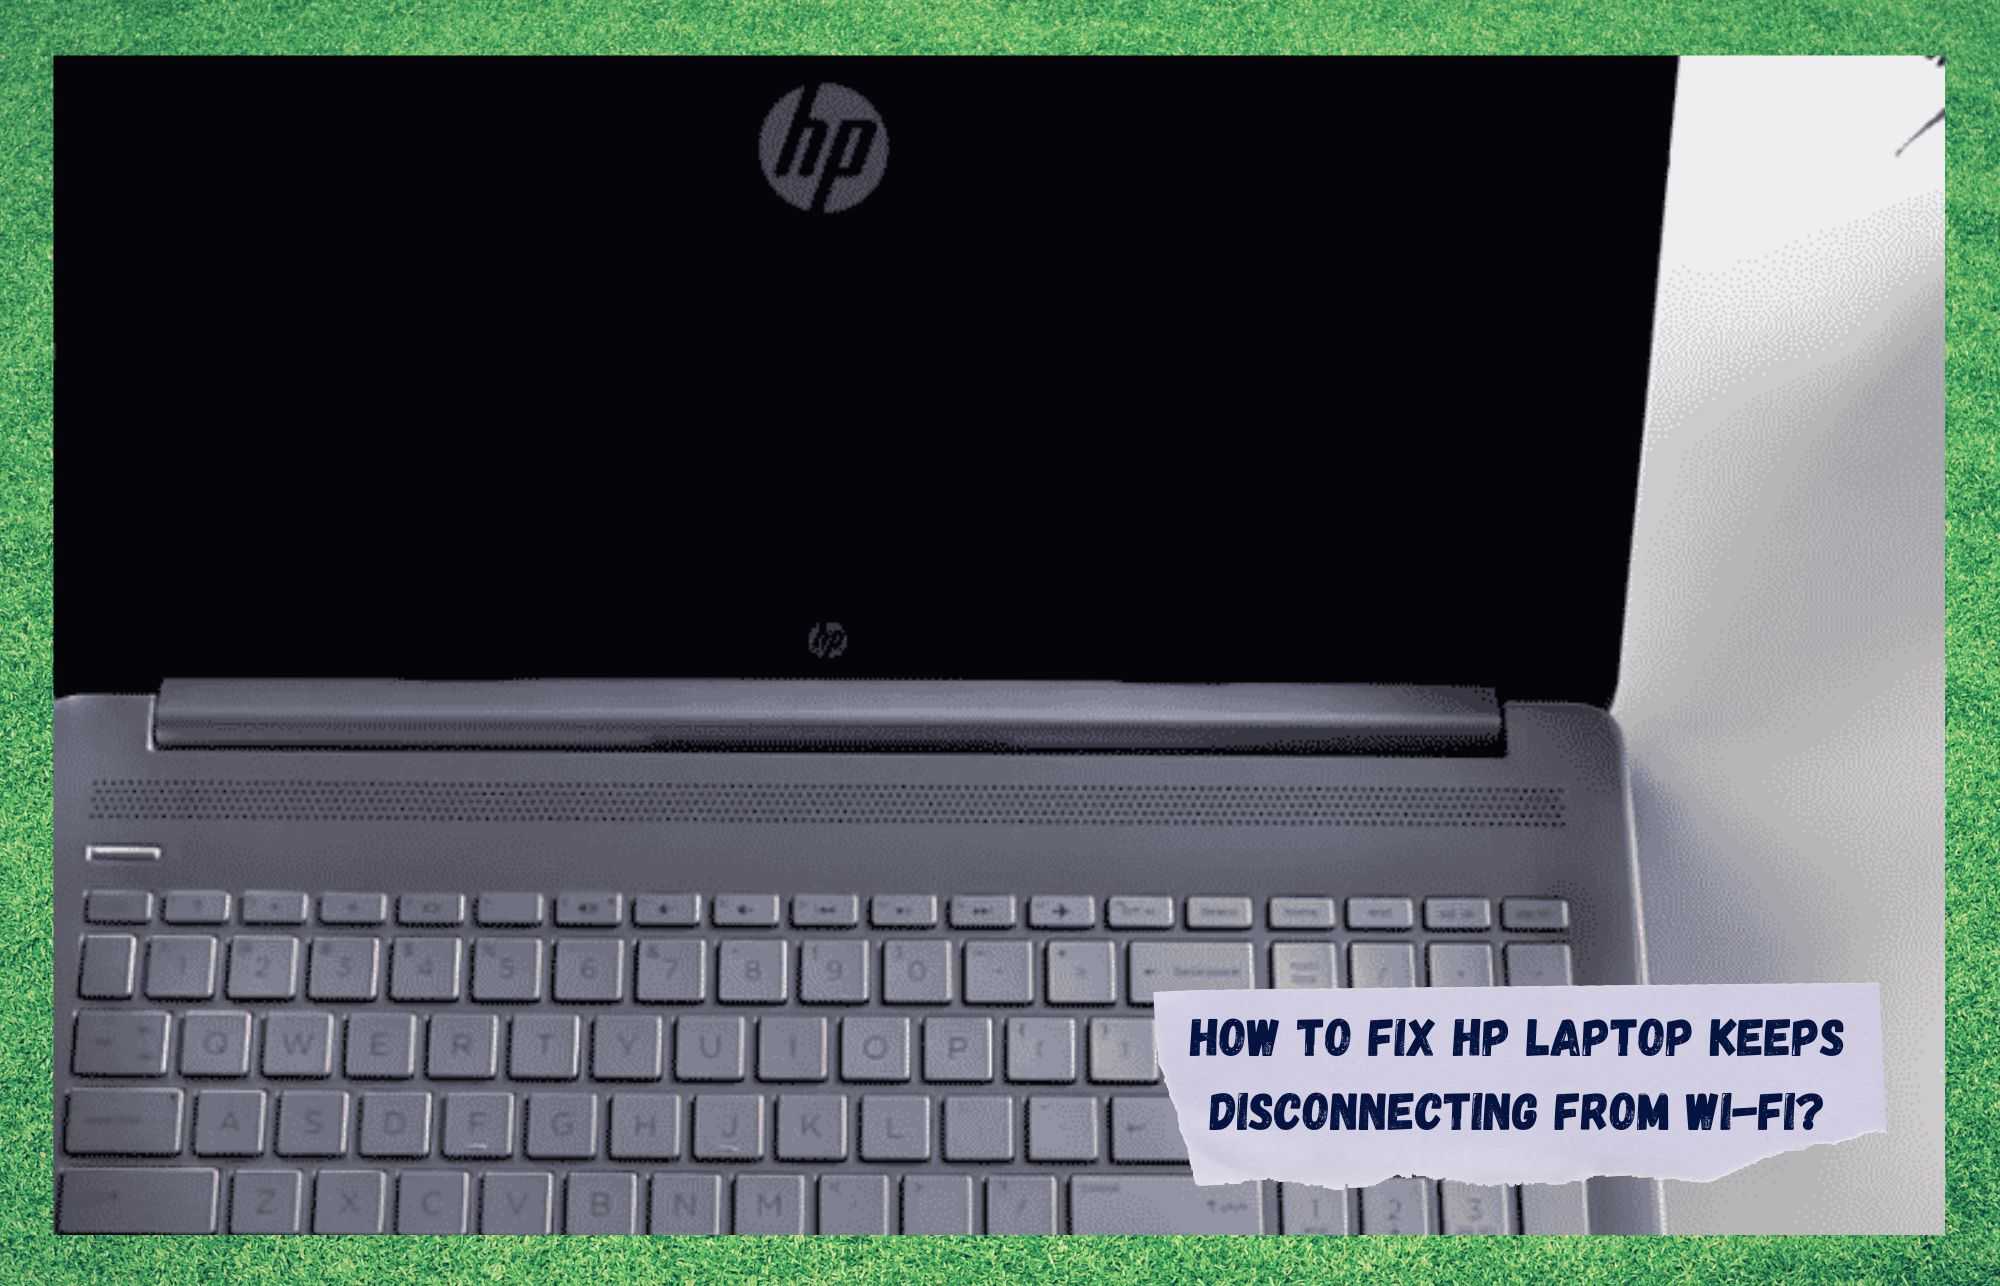 HP ল্যাপটপকে ঠিক করার 6 টি উপায় Wi-Fi থেকে সংযোগ বিচ্ছিন্ন করে রাখে